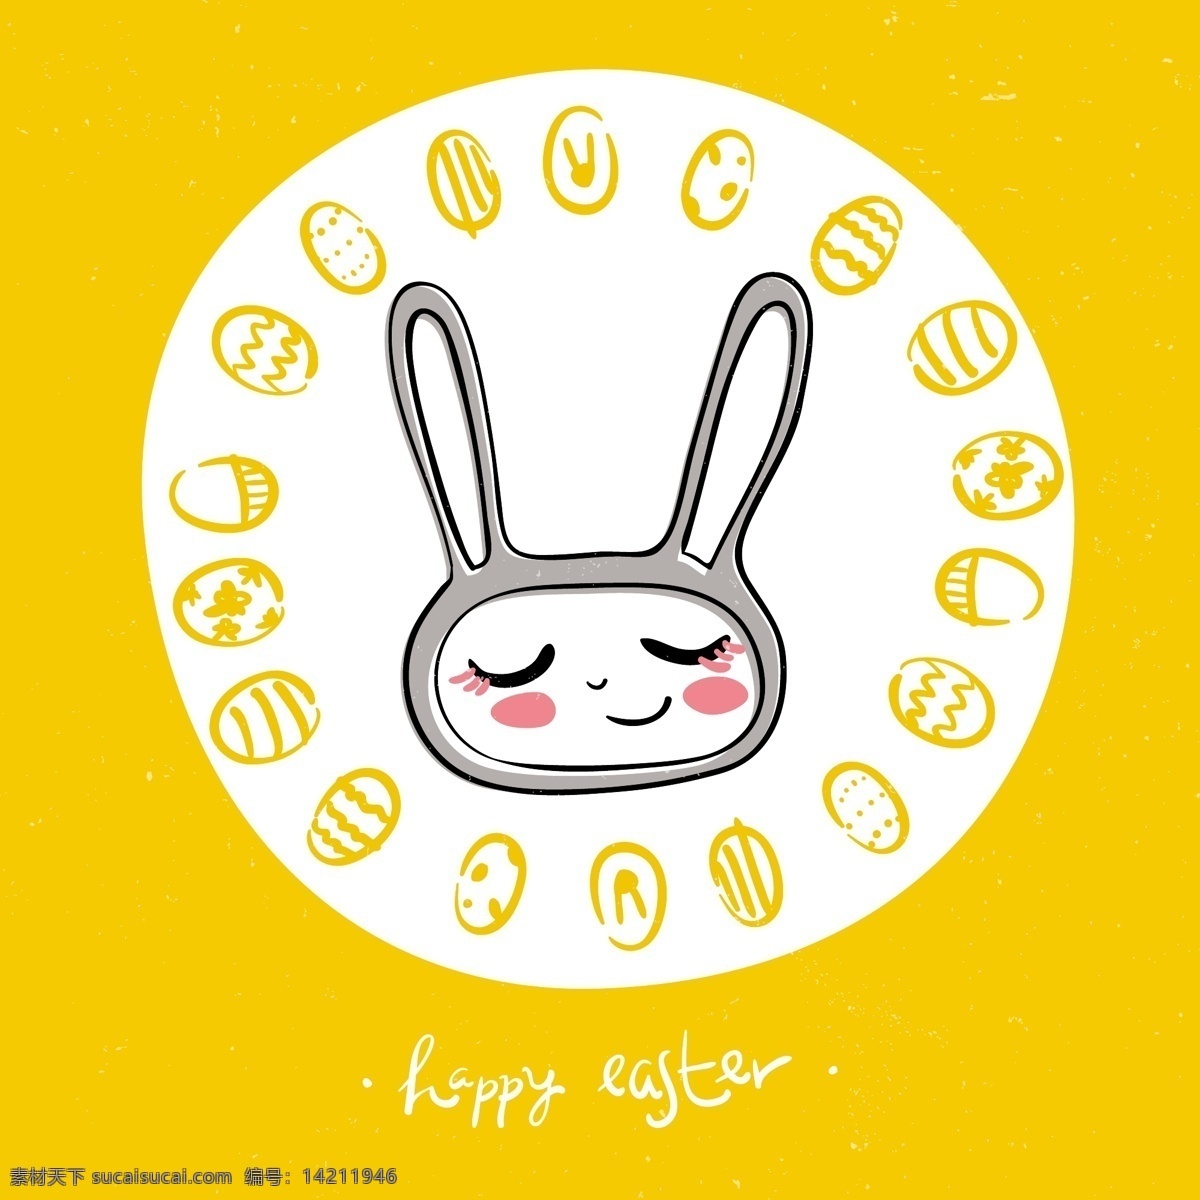 复活节 童趣 涂鸦 背景 矢量 鸡蛋 卡通 天真烂漫 彩蛋 向量 兔子 快乐 矢量图 其他矢量图